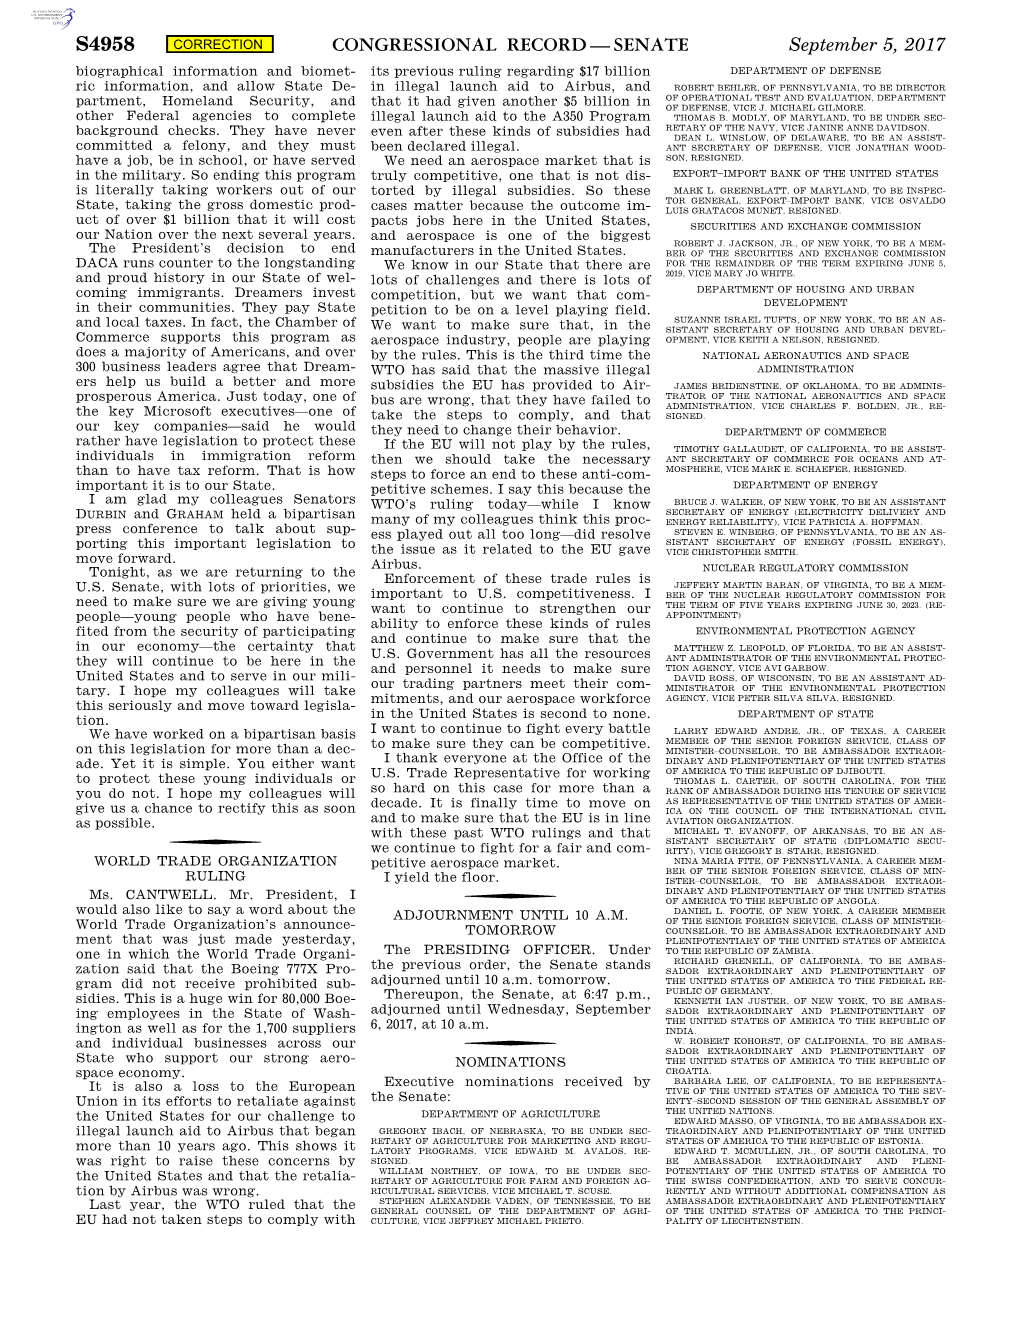 Congressional Record—Senate S4958